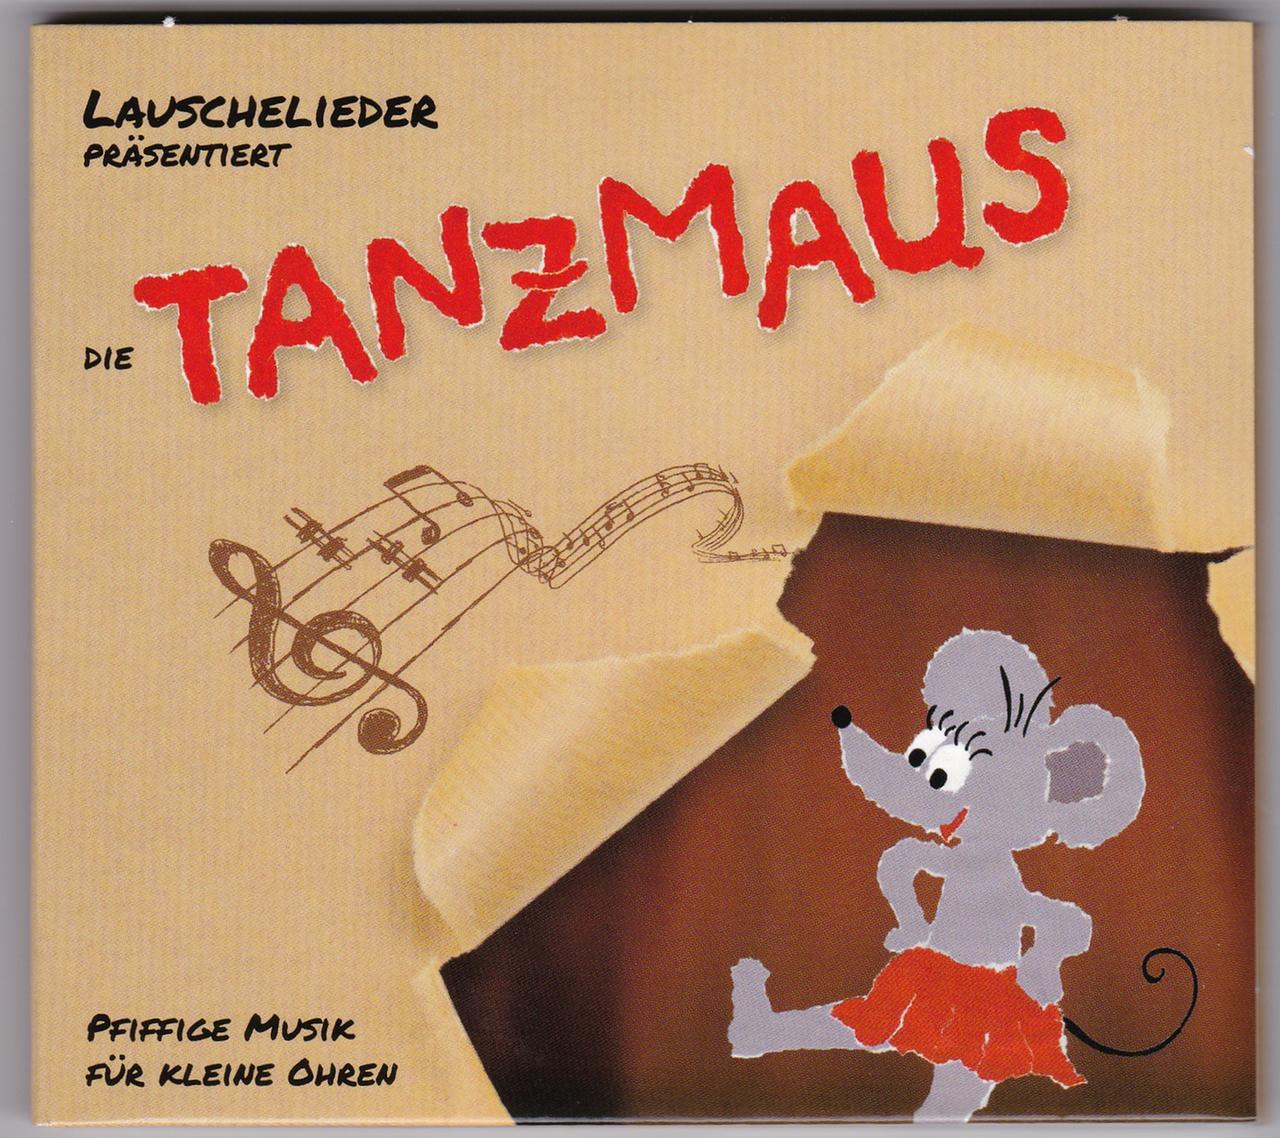 Cover der CD "Die Tanzmaus" von Lauschelieder